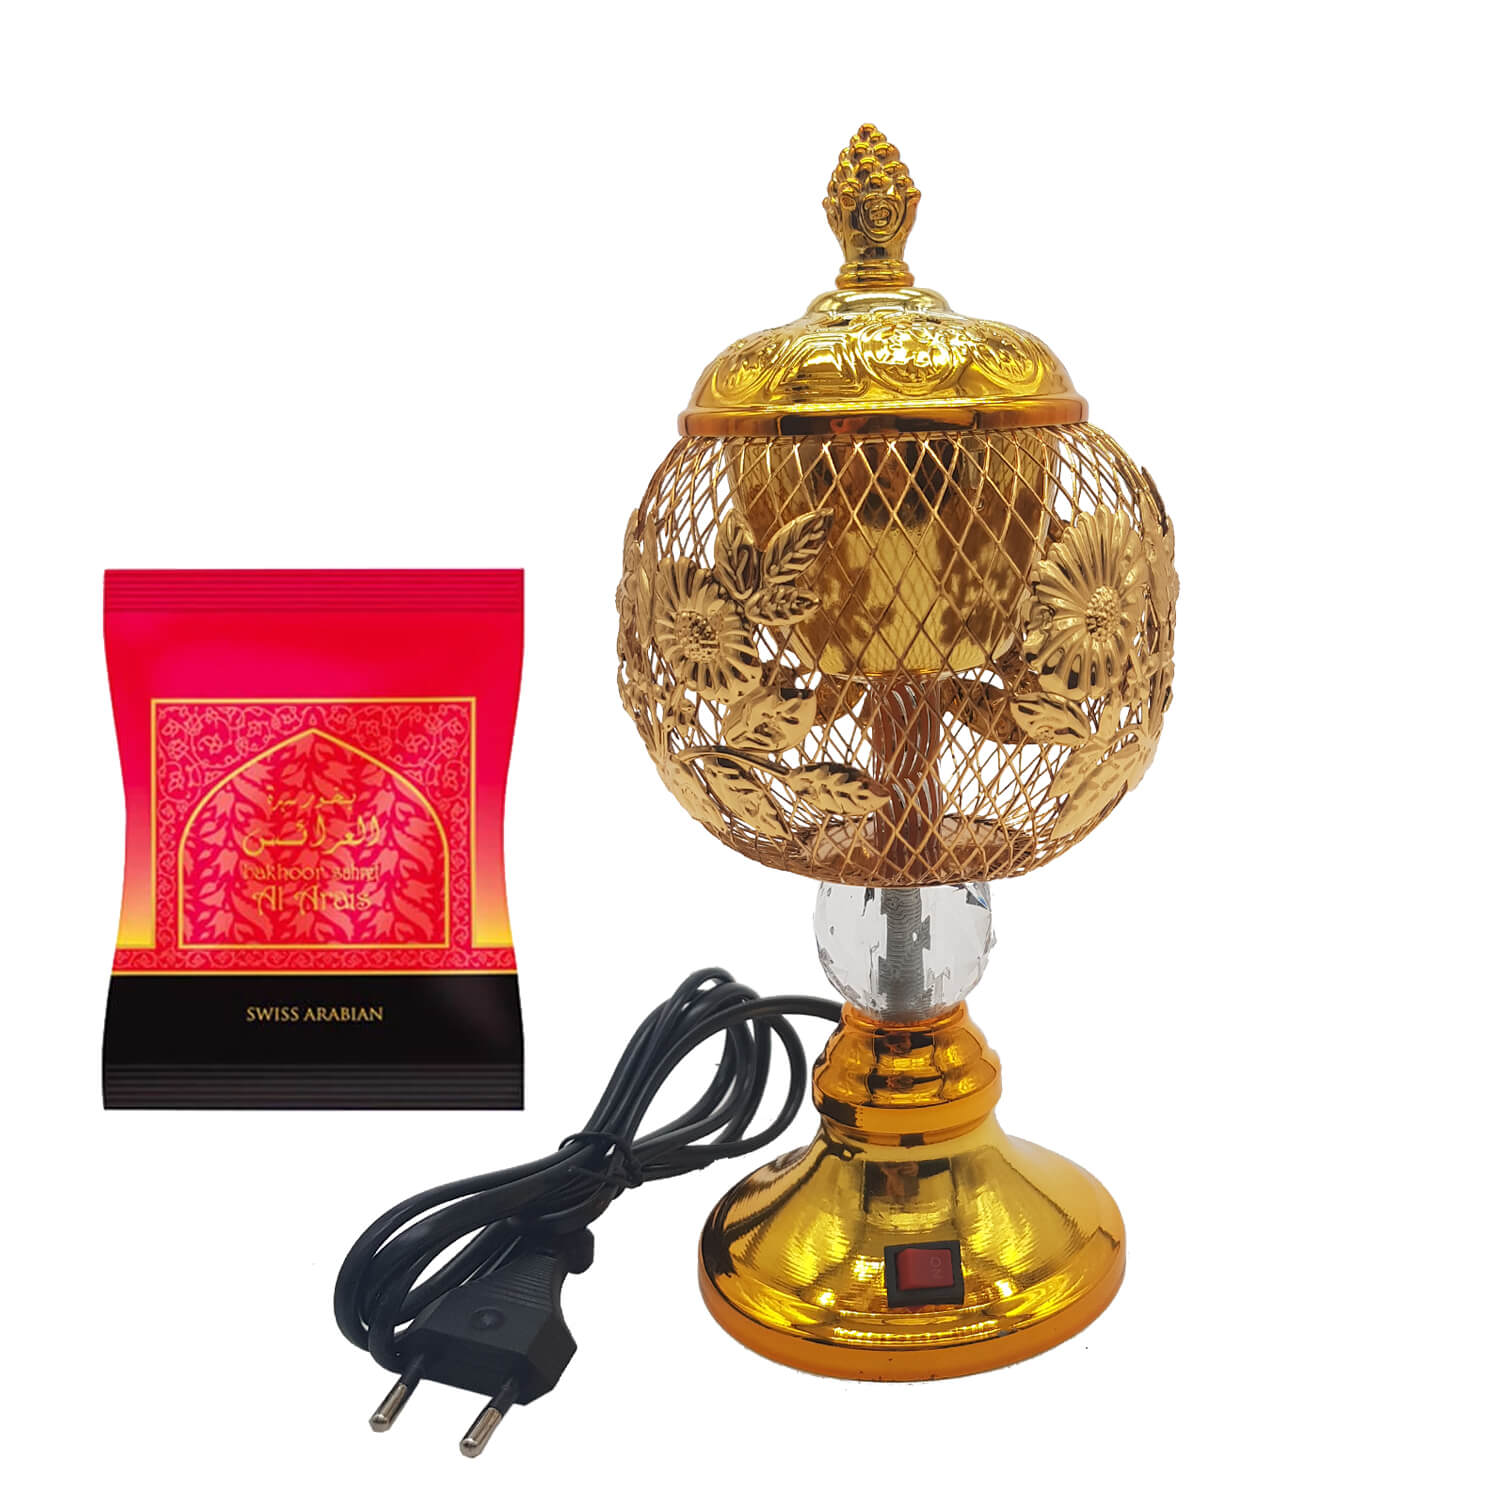 Electrical Bakhoor Burner & 40g Fragrance Paste - Golden